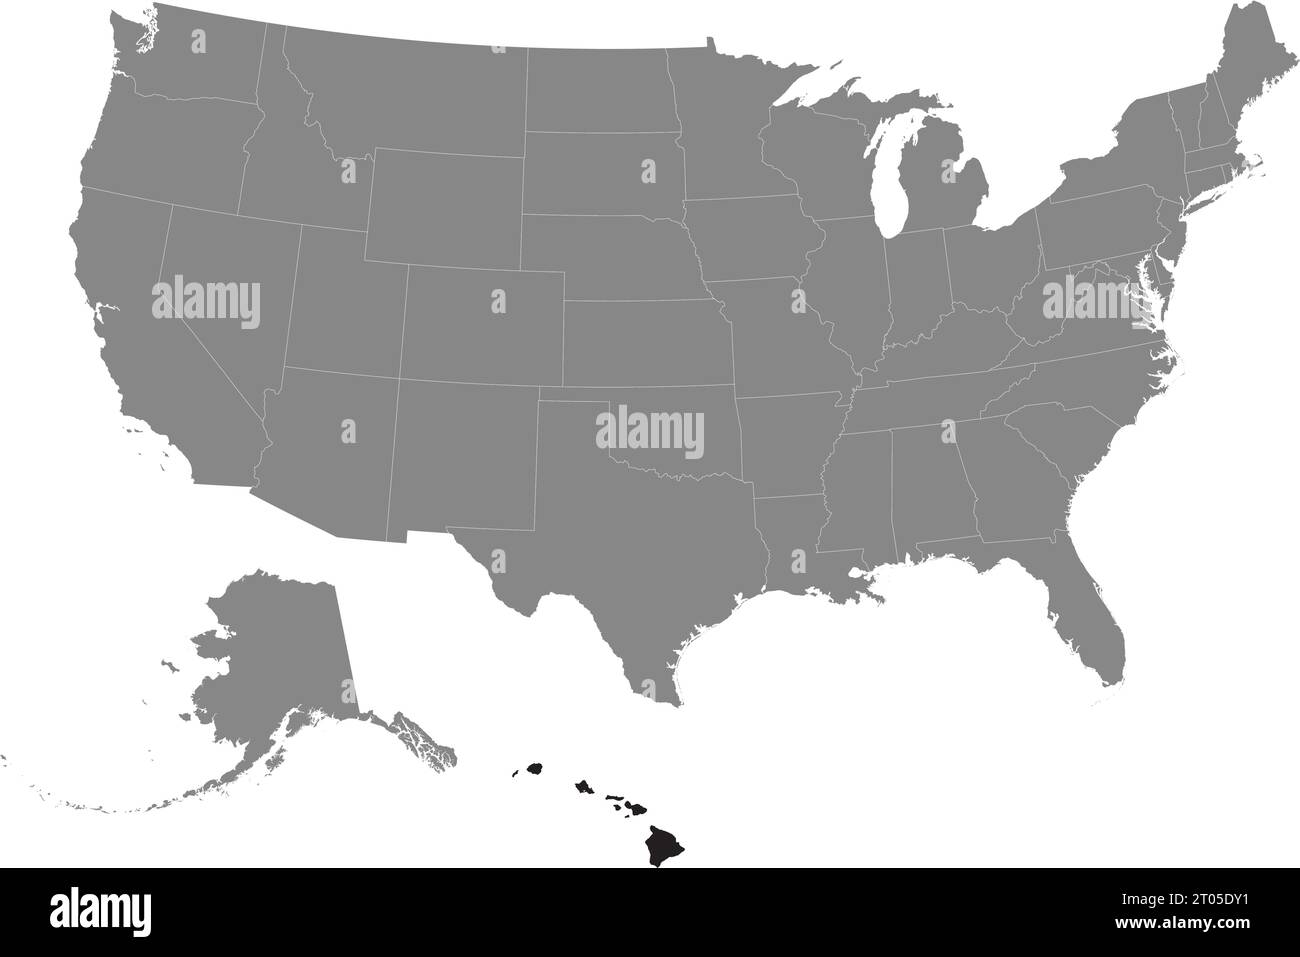 Schwarze CMYK-Bundeskarte von HAWAII in detaillierter grauer, leerer politischer Karte der Vereinigten Staaten von Amerika auf transparentem Hintergrund Stock Vektor